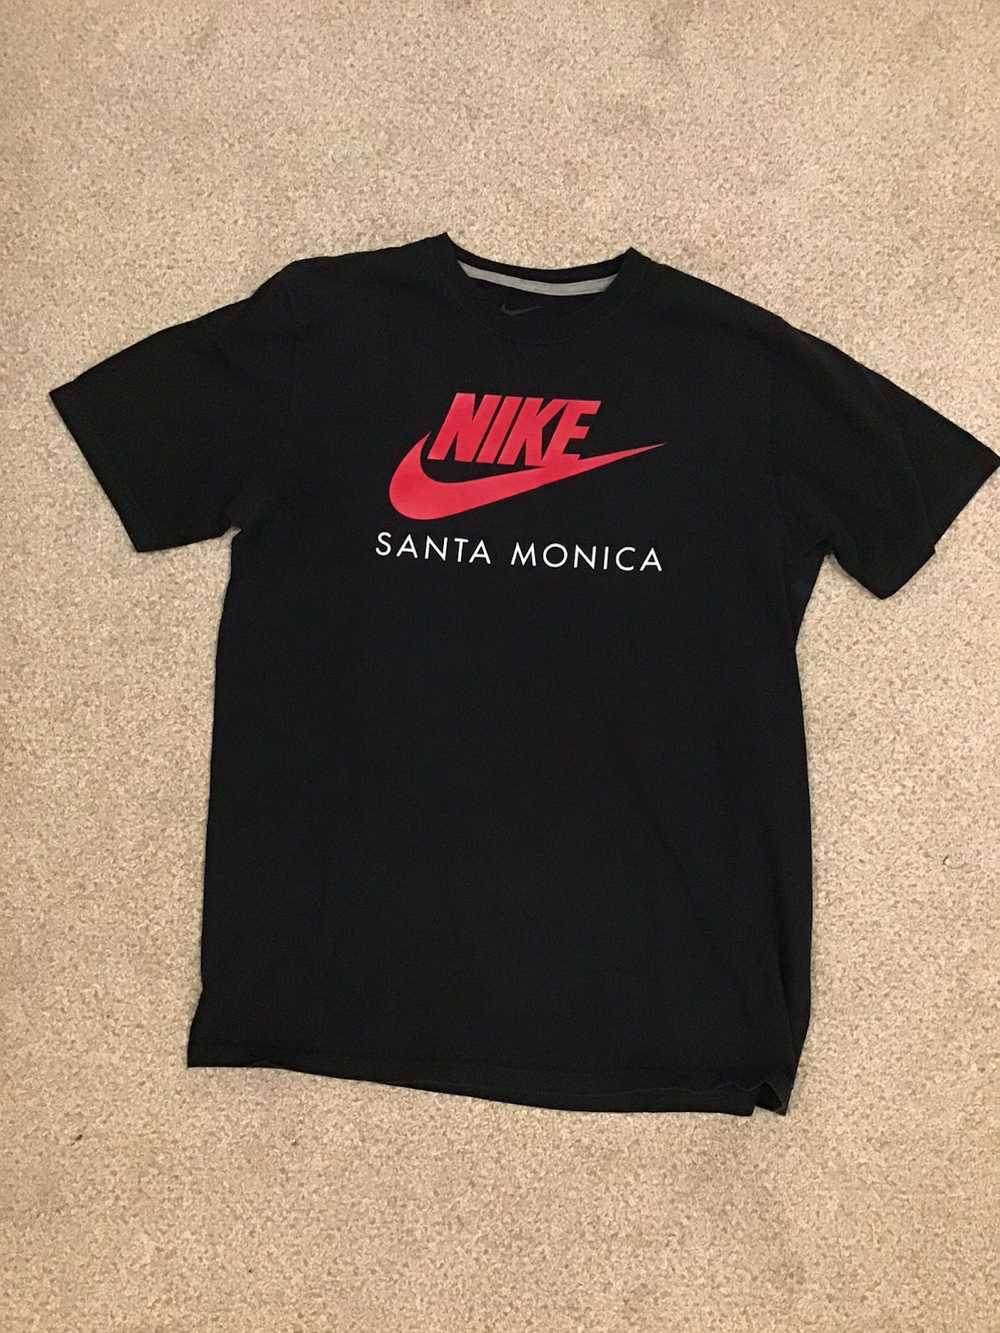 Nike Nike Santa Monica Short Sleeve T shirt Mens … - image 1